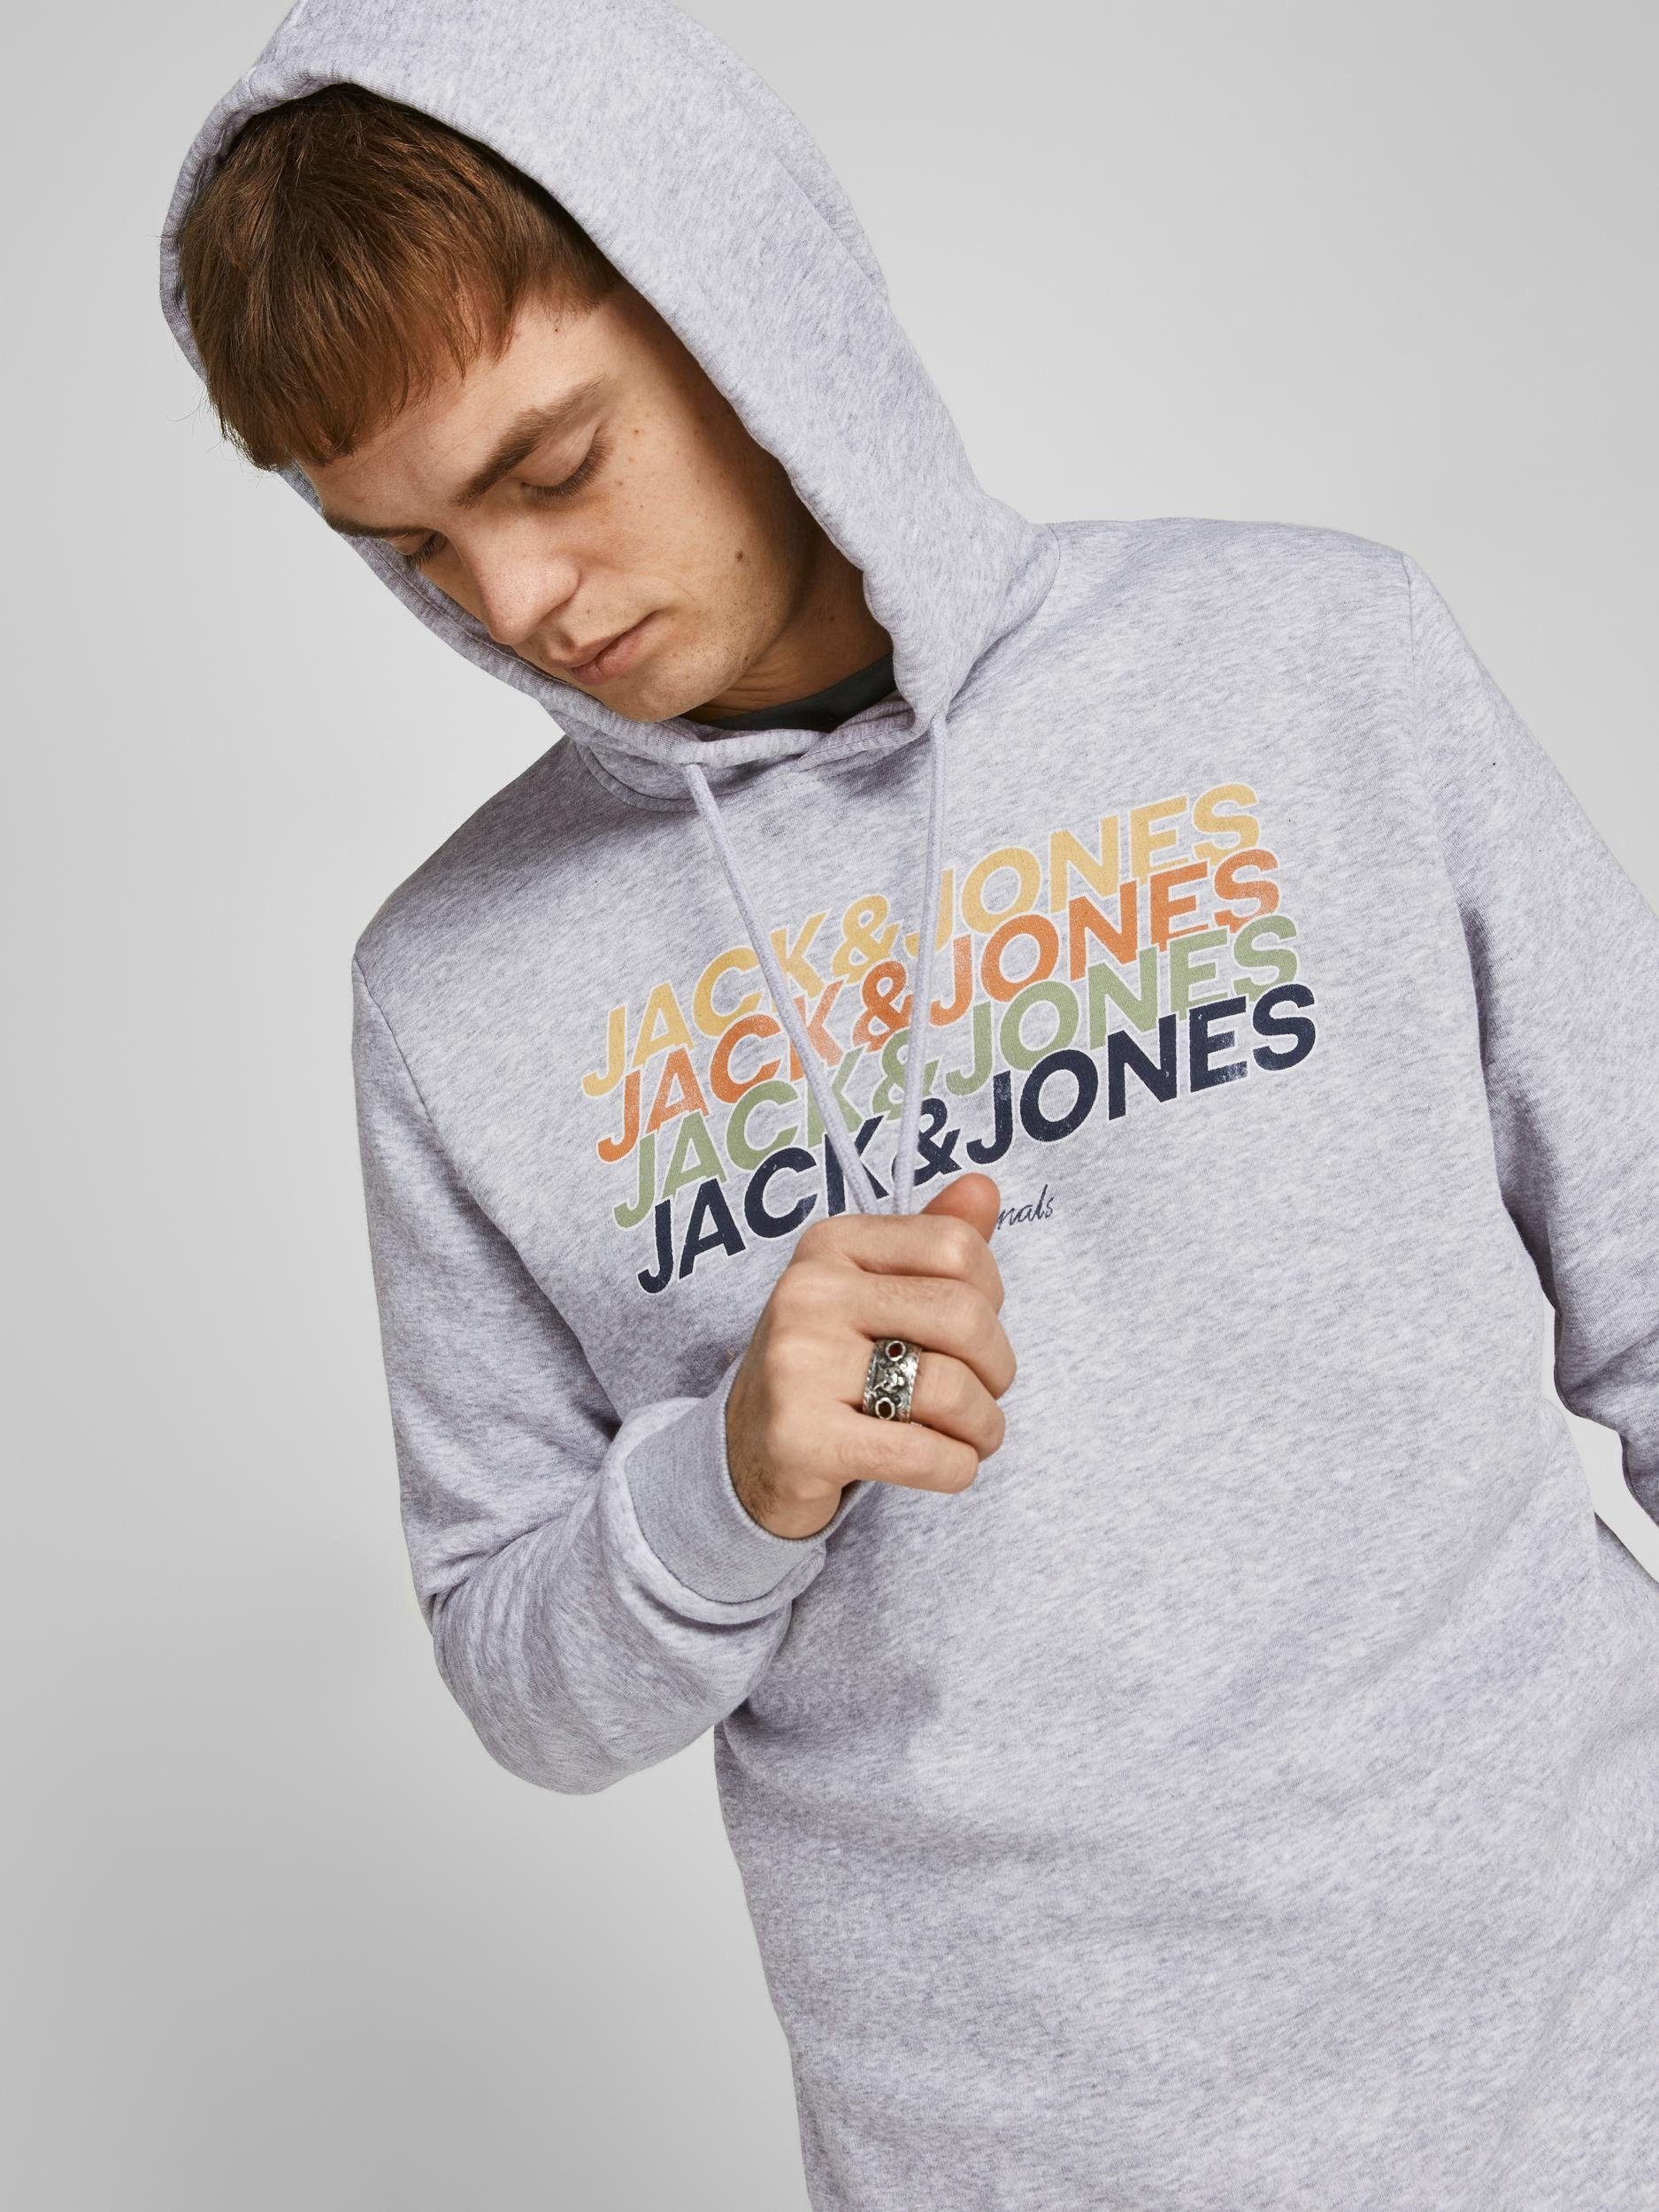 Jack & Jones Hoodie Kapuze mit Sweatshirt HOOD Pullover SWEAT grau JORBRADY